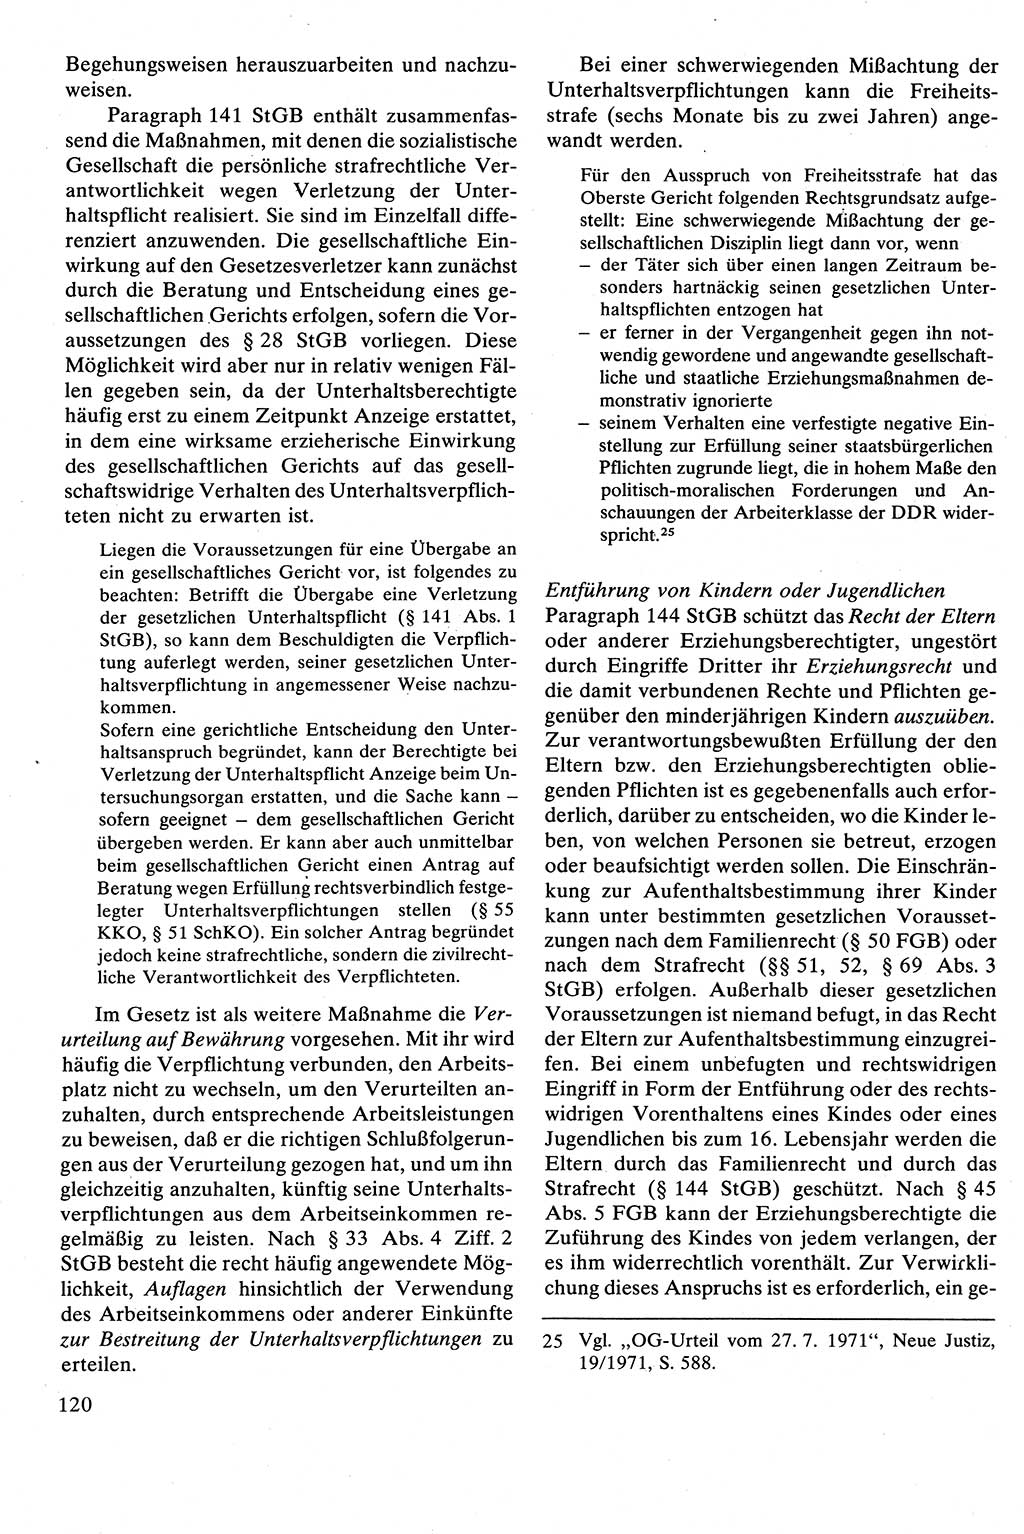 Strafrecht [Deutsche Demokratische Republik (DDR)], Besonderer Teil, Lehrbuch 1981, Seite 120 (Strafr. DDR BT Lb. 1981, S. 120)